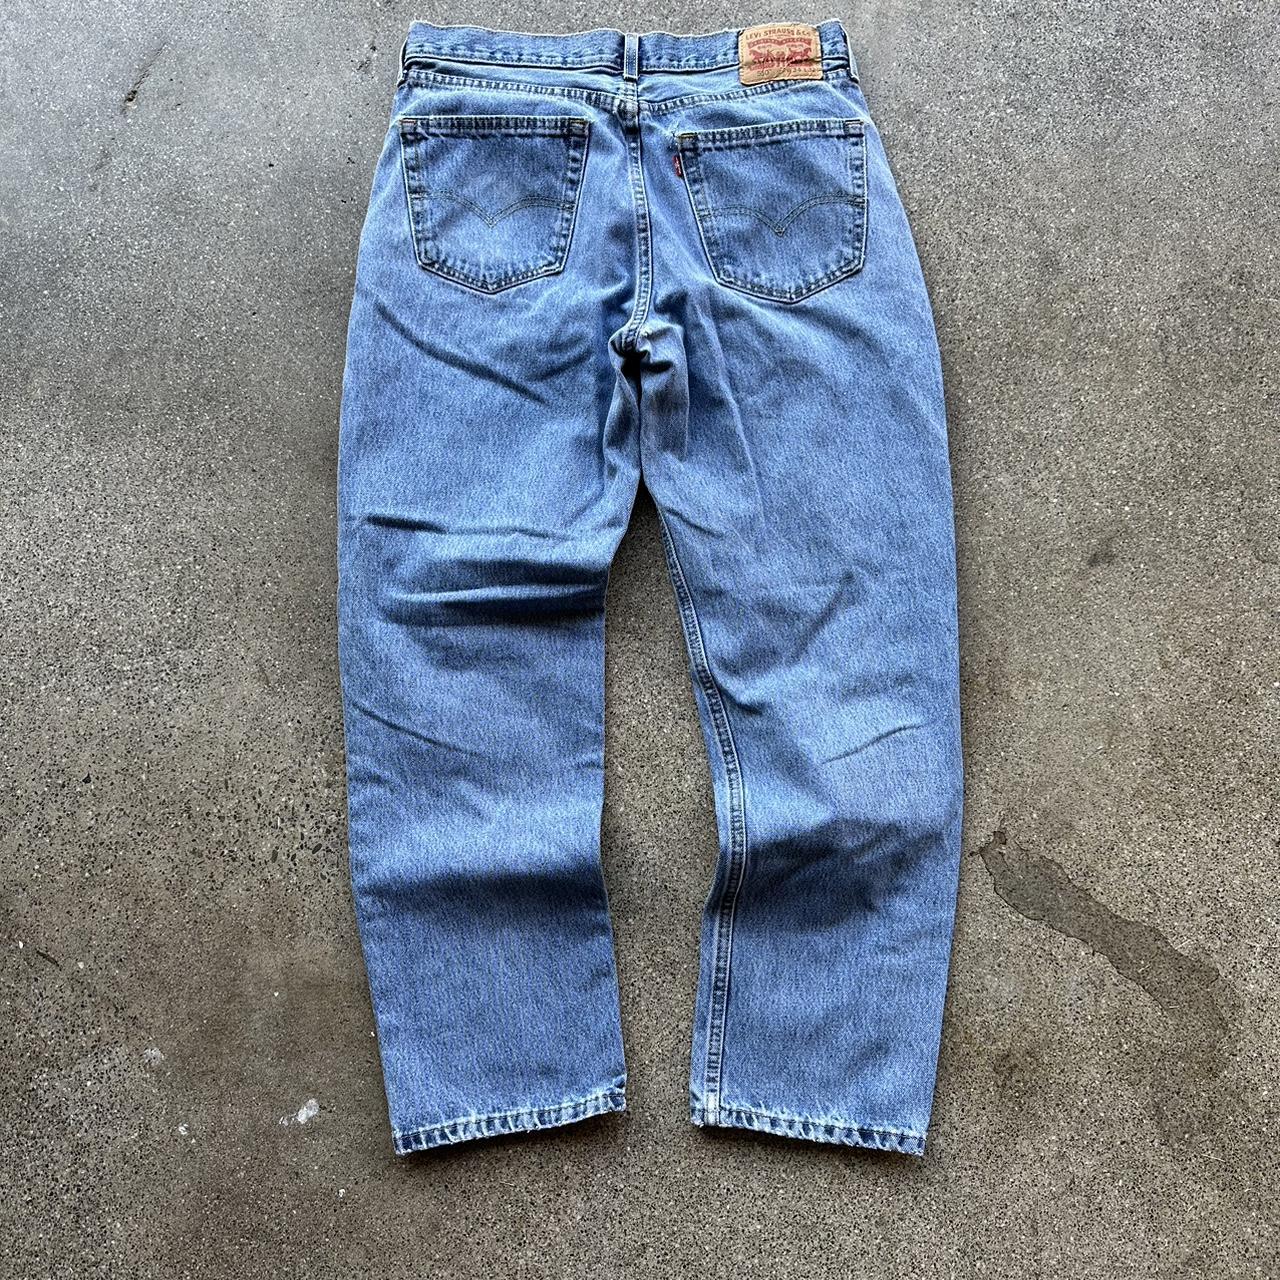 Levi 550 jeans Clean pair size 34x32 Baggy fit - Depop